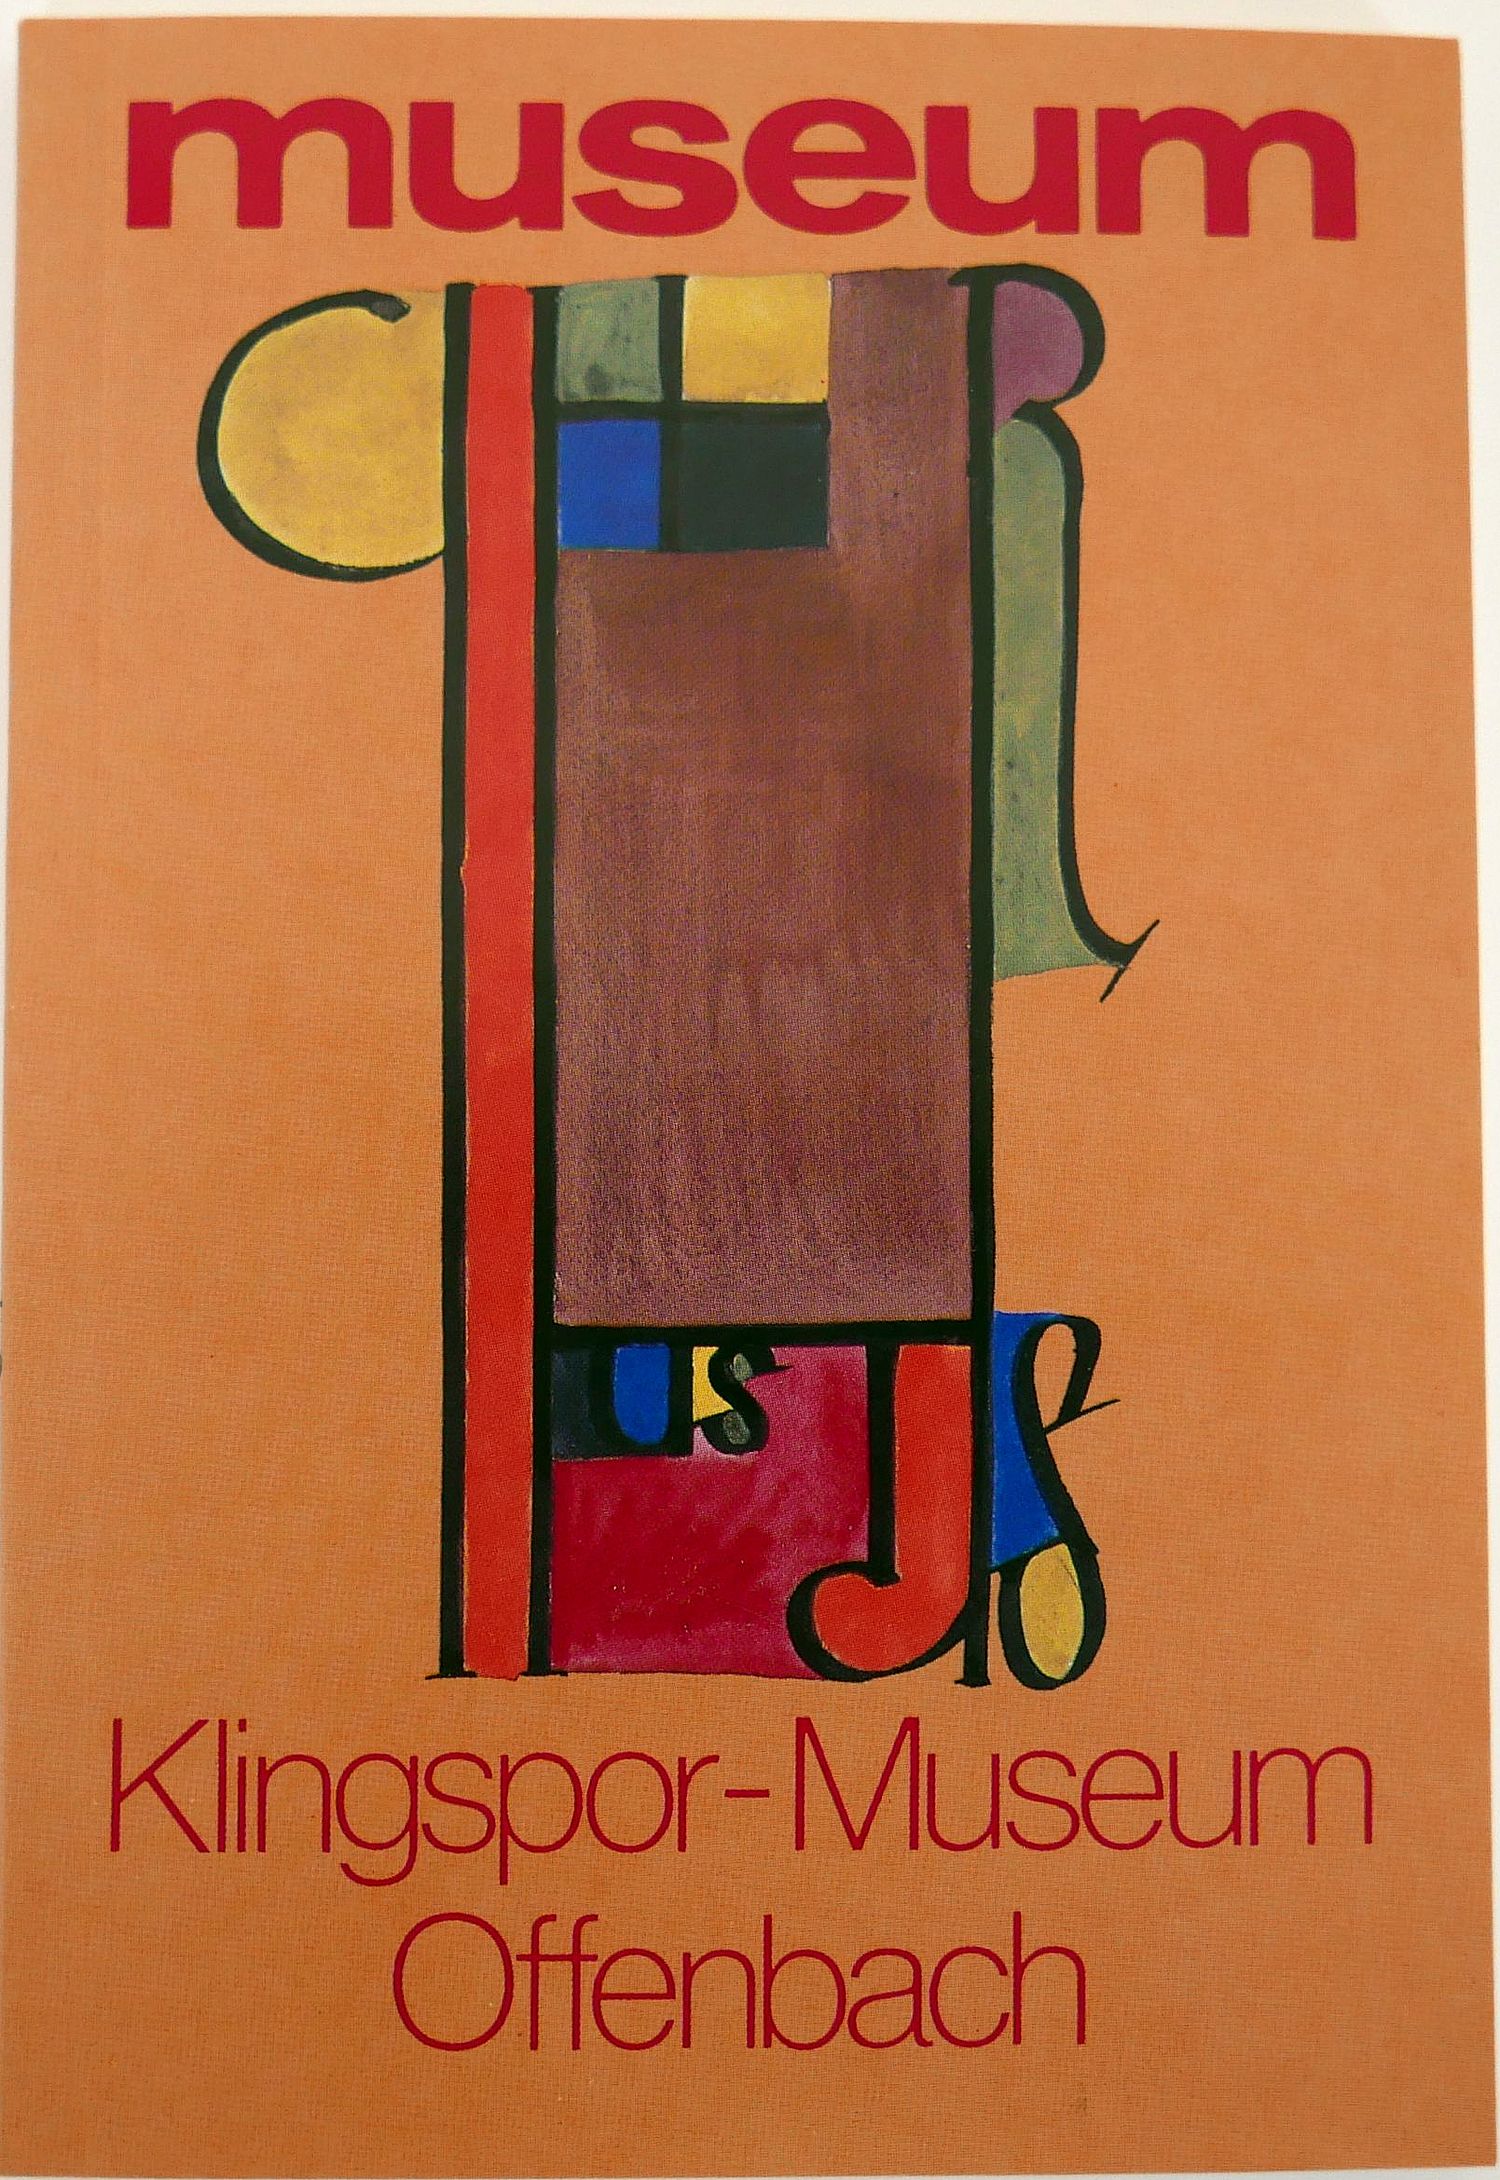 Cover der Publikation "Klingspor-Museum Offenbach"